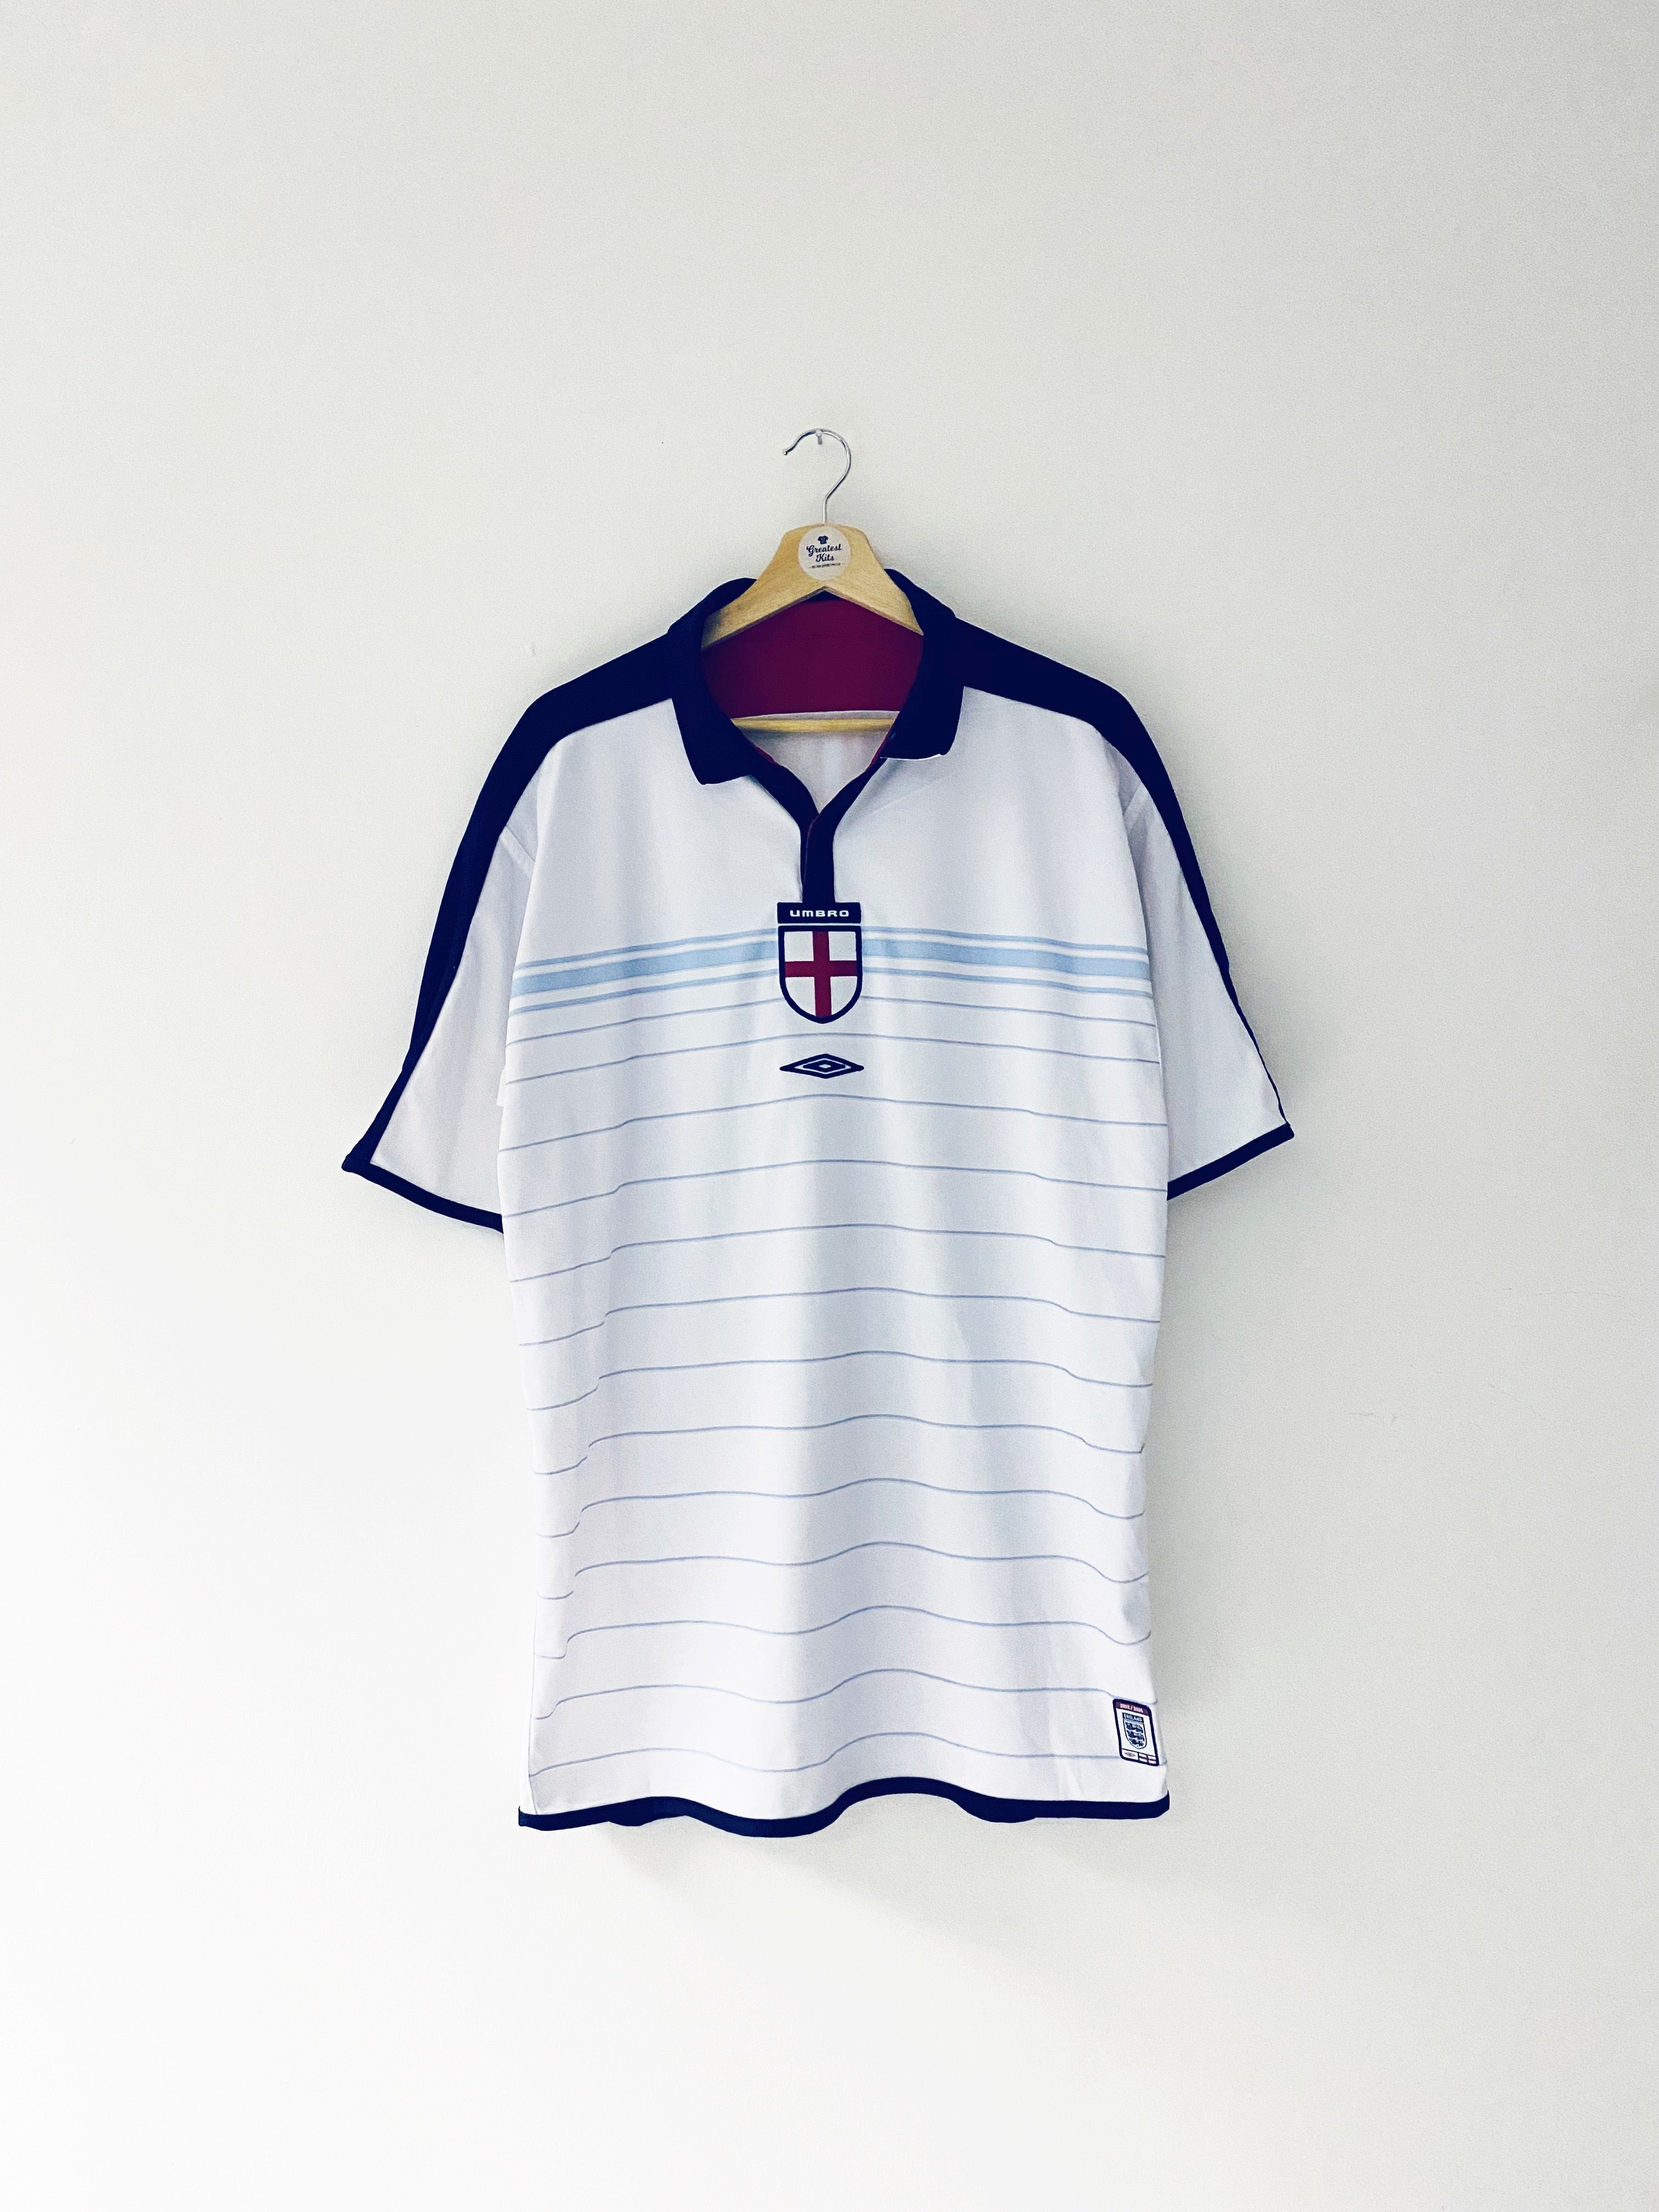 2003/05 England Home Shirt (XL) 9/10